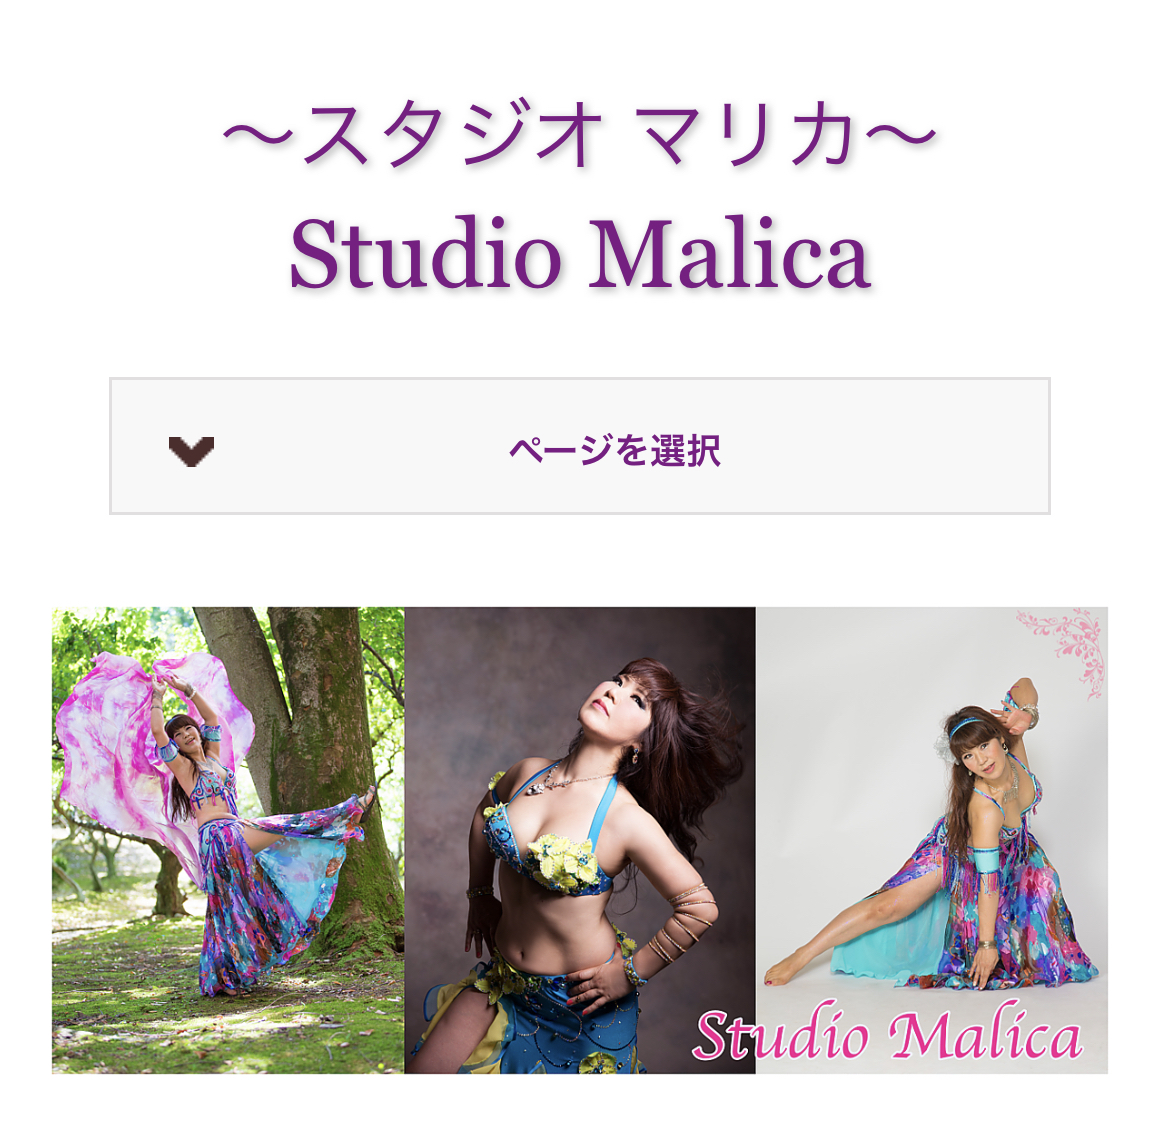 栃木県、群馬県ベリーダンス教室『Studio Malica 』様のご紹介❤️